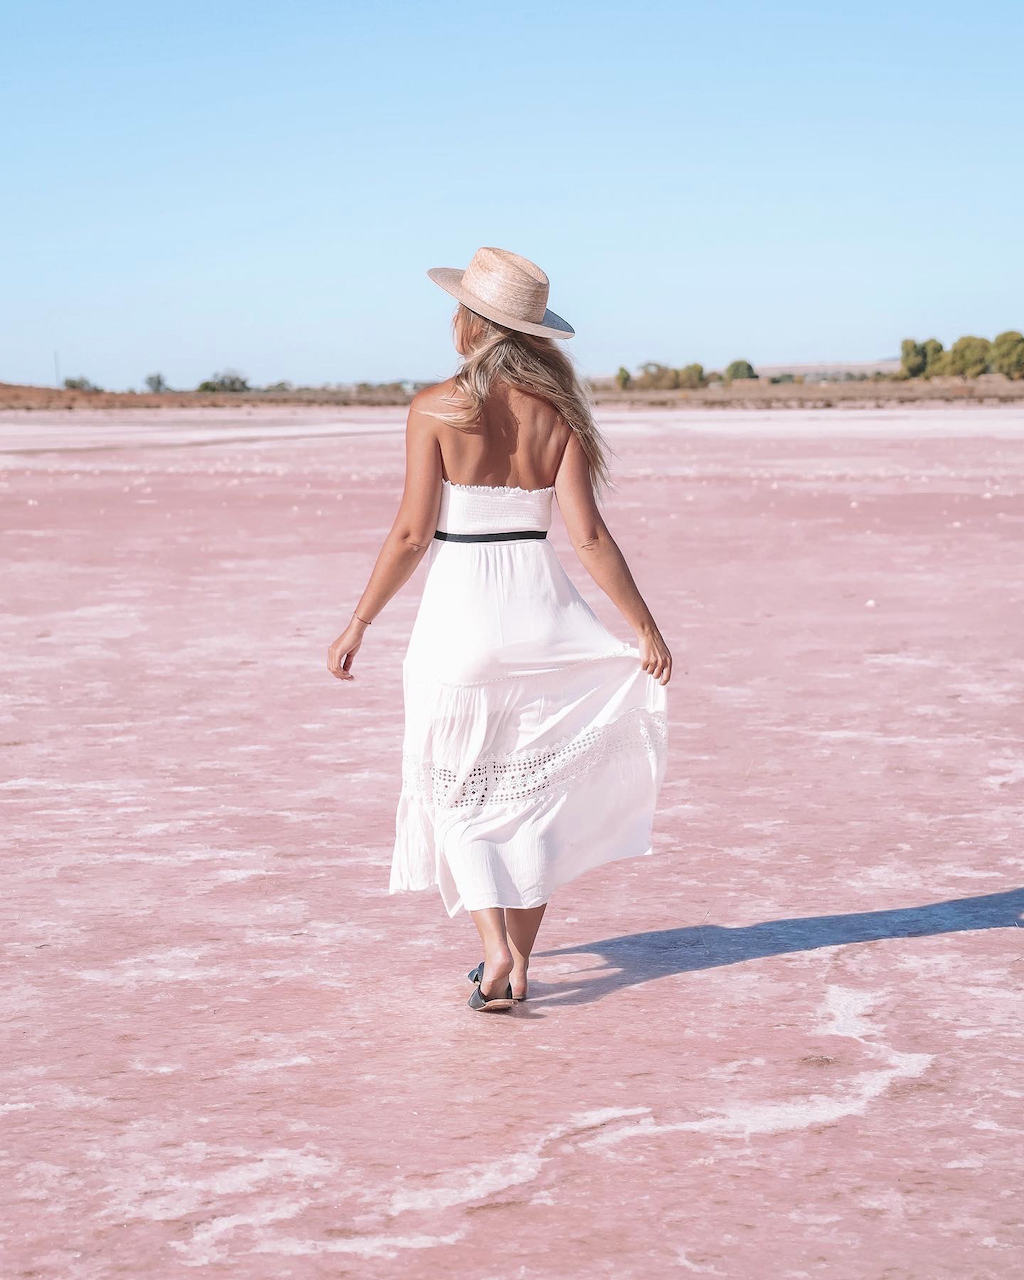 Femme blonde marchant sur le lac Bumbunga - South Australia (SA) - Australie